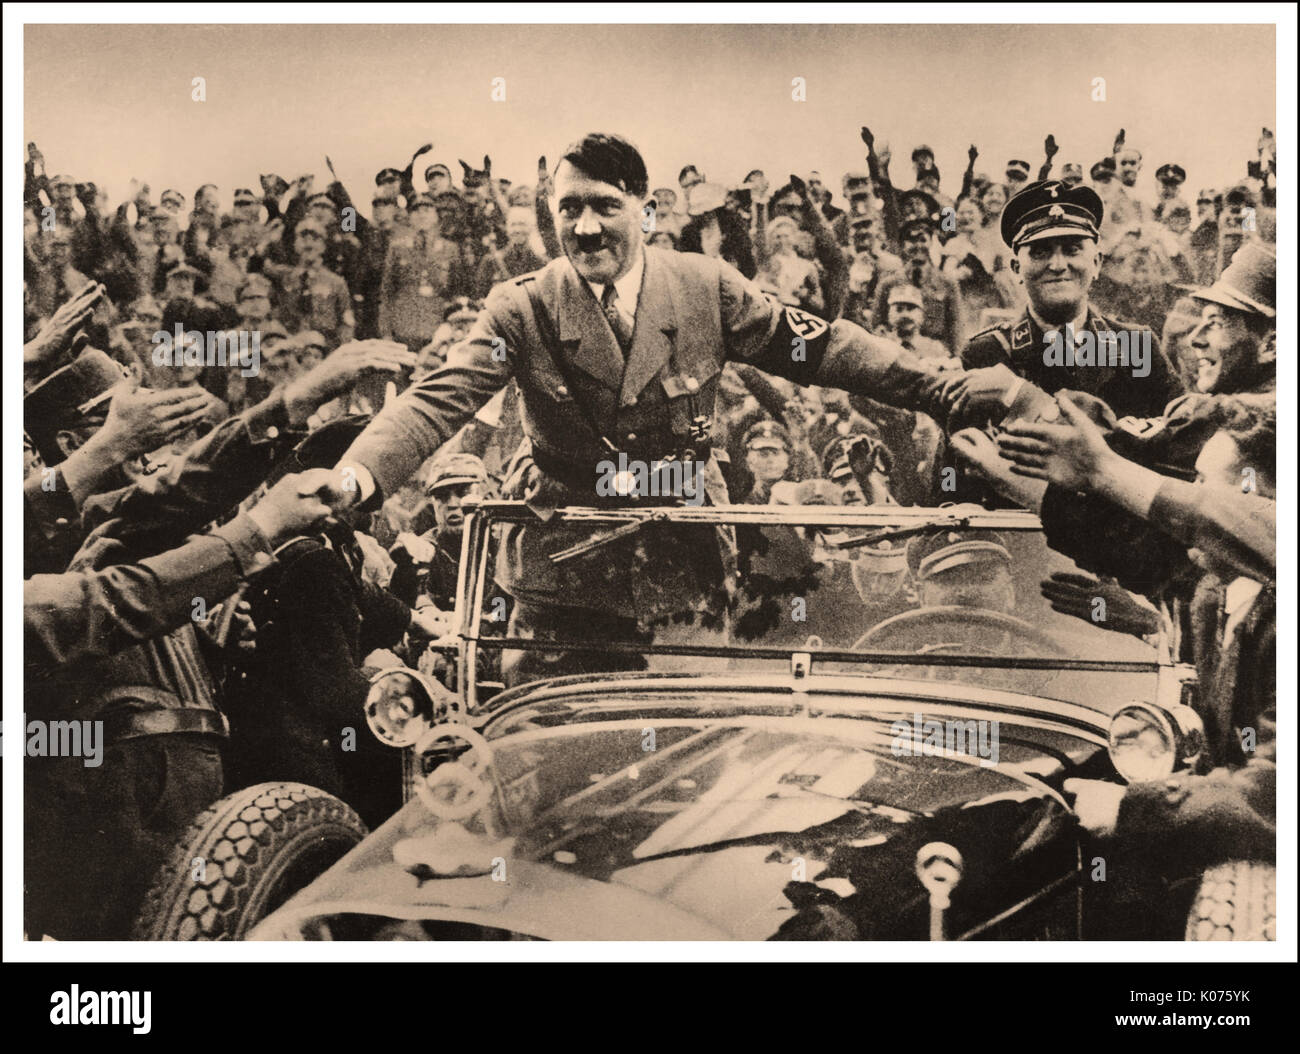 ADOLF HITLER Anbetung verehren die Hände schütteln ÖFFENTLICHEN WINKENDE MENSCHENMENGE Adolf Hitler in seiner oben offenen Mercedes Car auf dem Höhepunkt seiner Popularität Händeschütteln mit einem verehrenden deutsche Öffentlichkeit, deren Zustimmung Bewertung für ihn im Jahr 1938 war um 96% Stockfoto